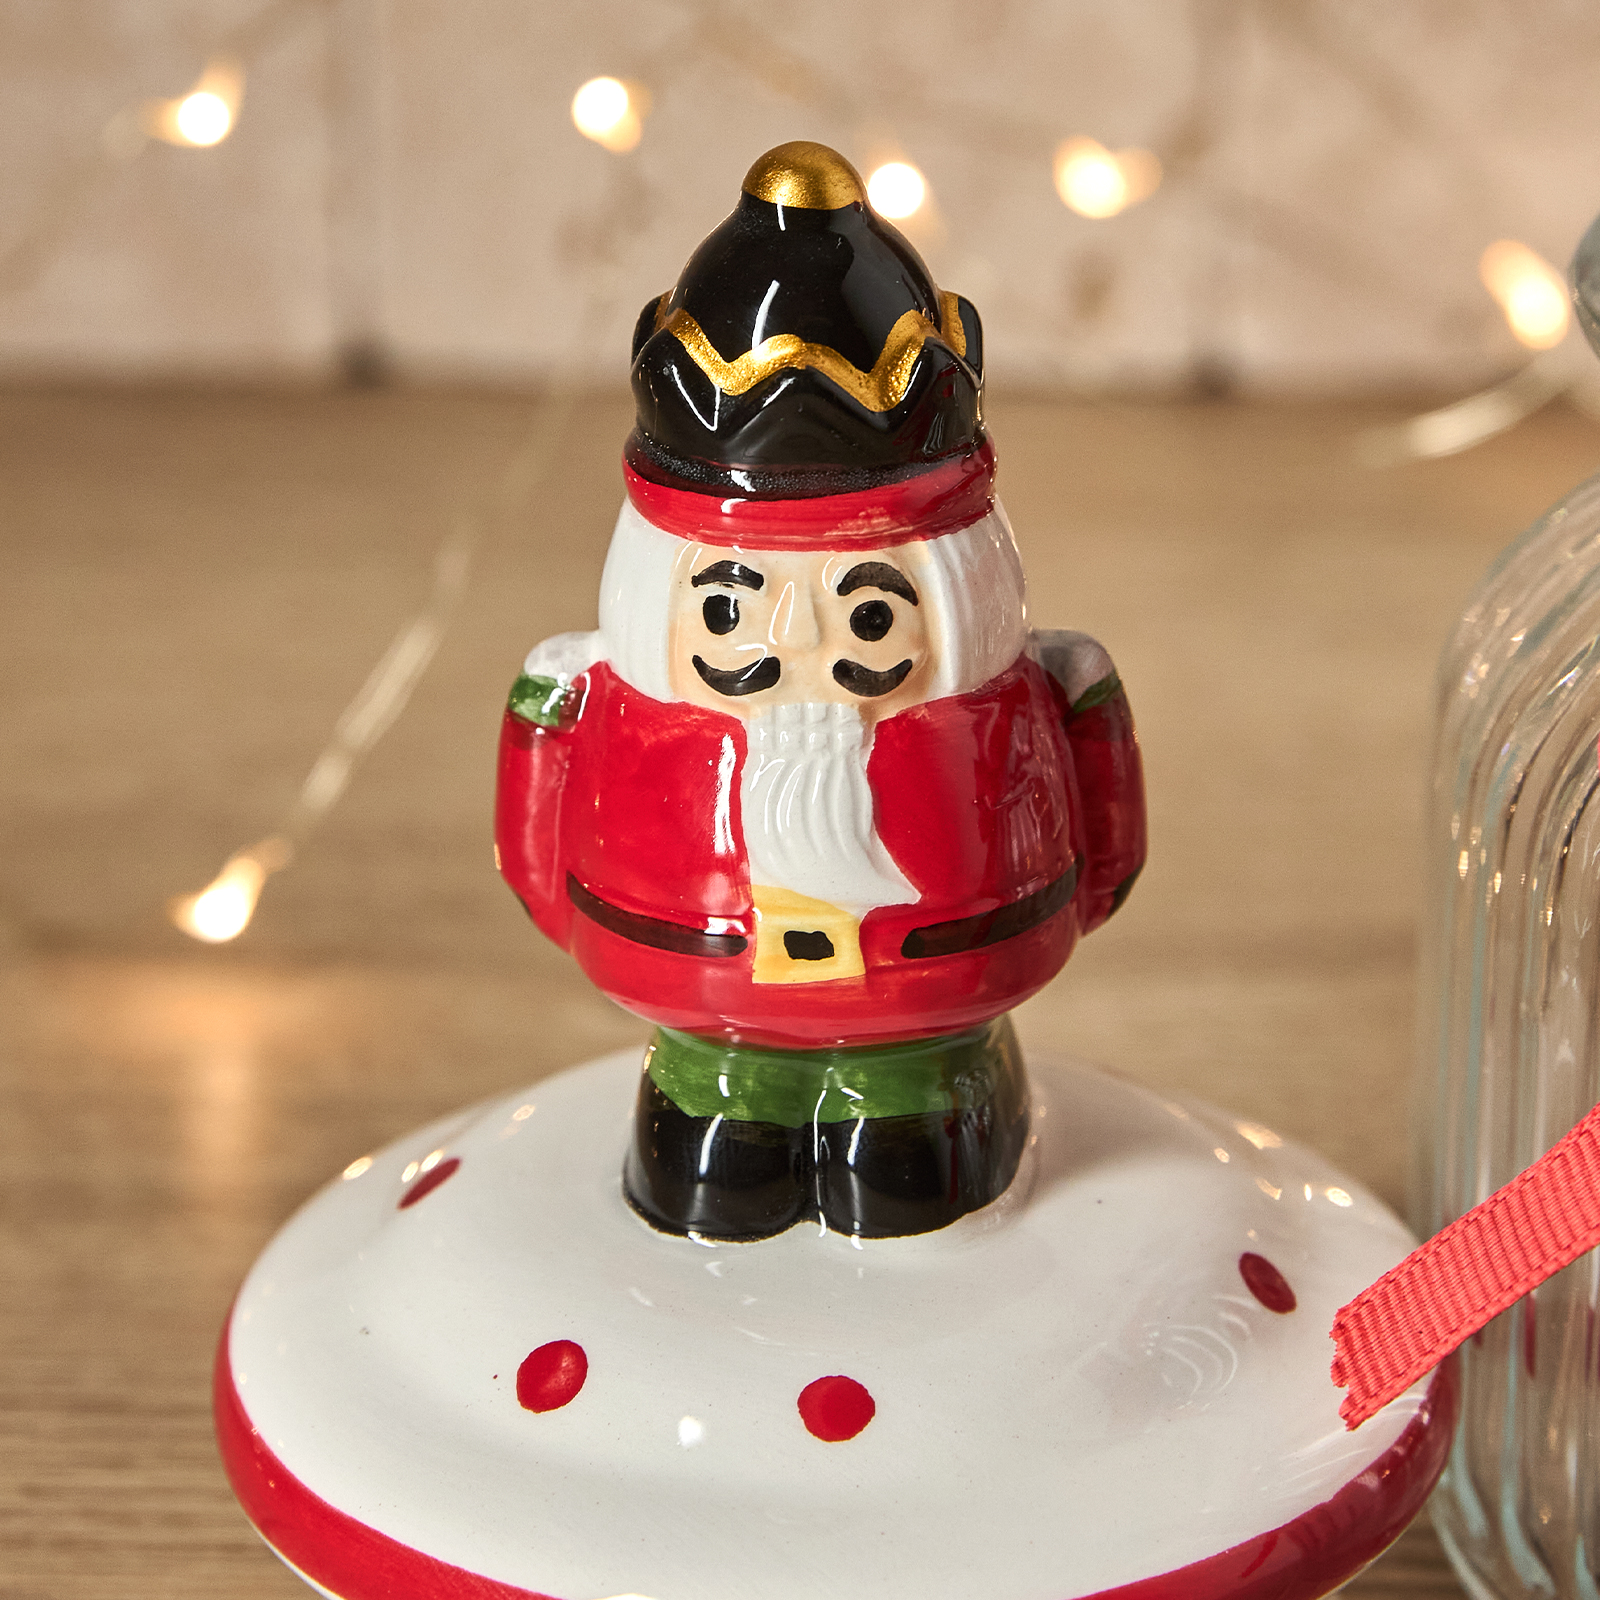 Емкость для хранения Christmas jam, щелкунчик CozyHome, цвет мультиколор, размер Один размер - фото 3